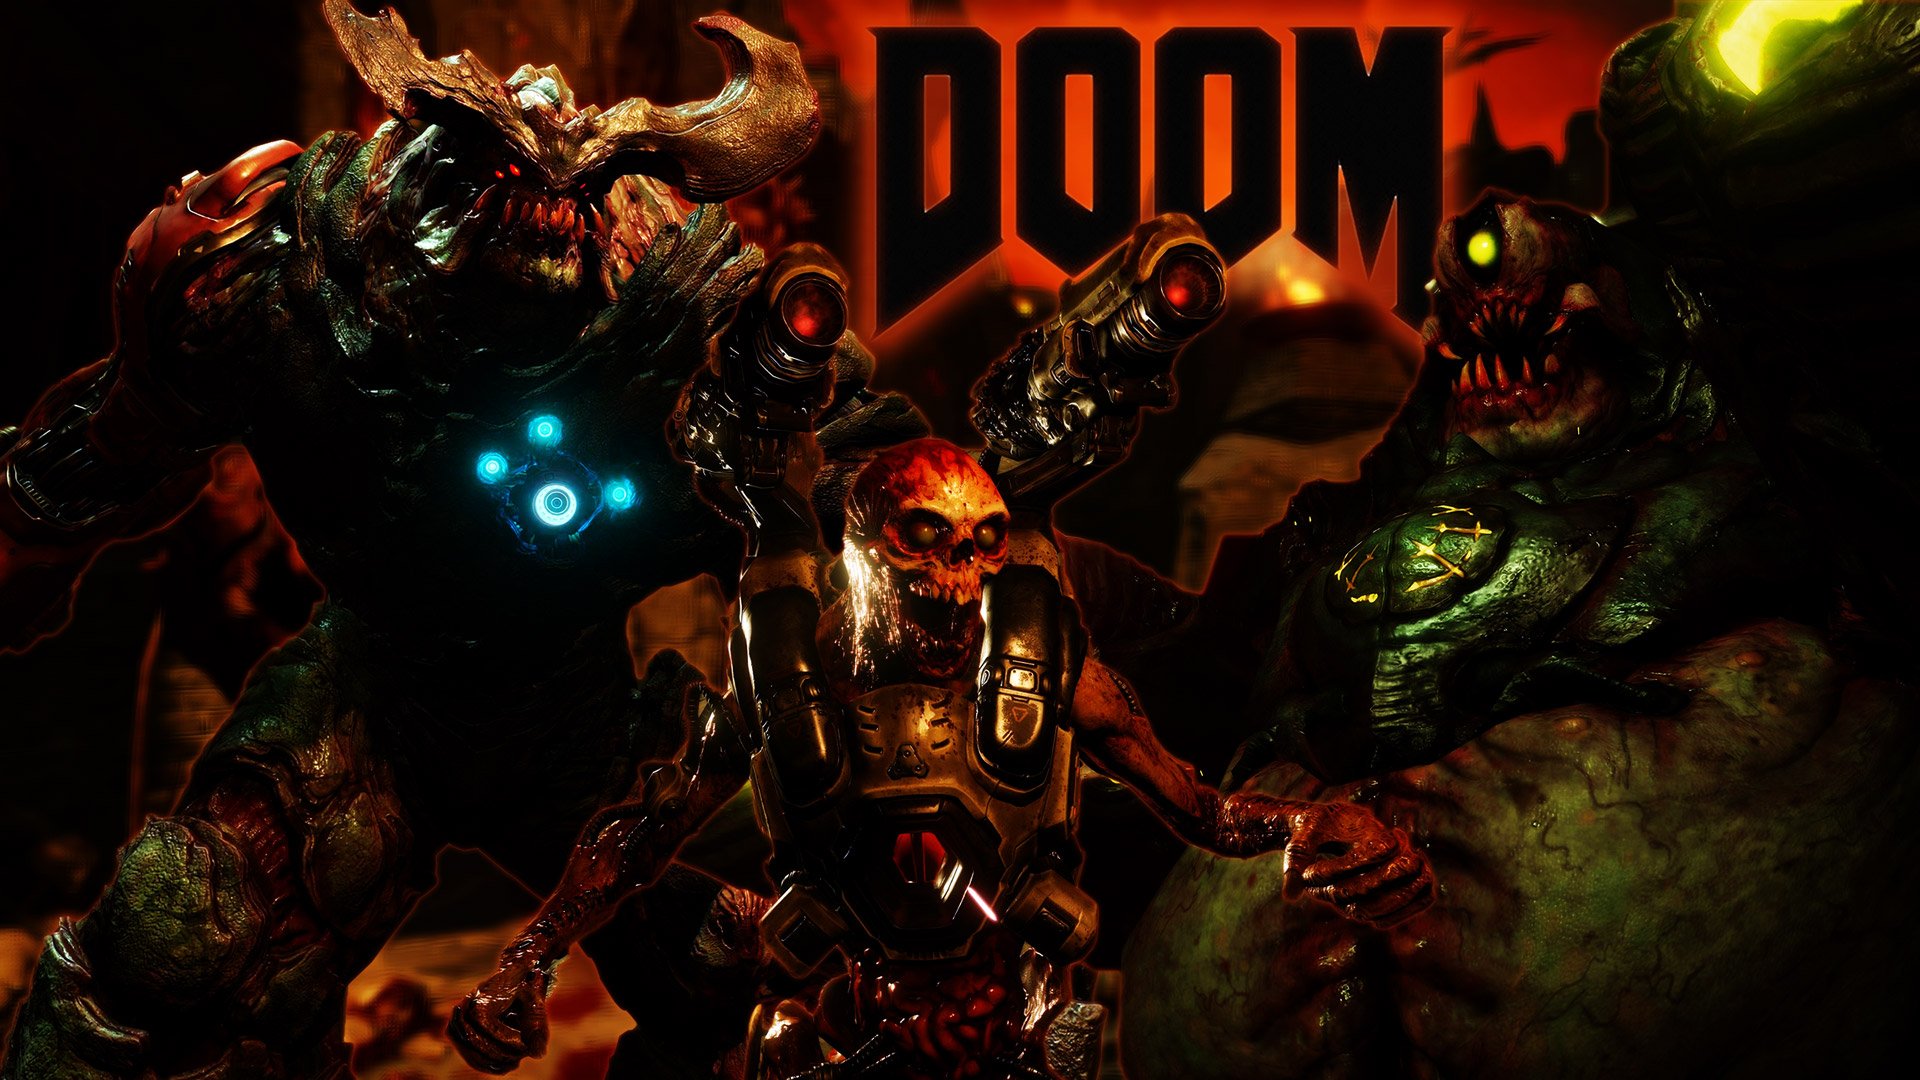 Free Doom 2016 Wallpaper in 1920x1080